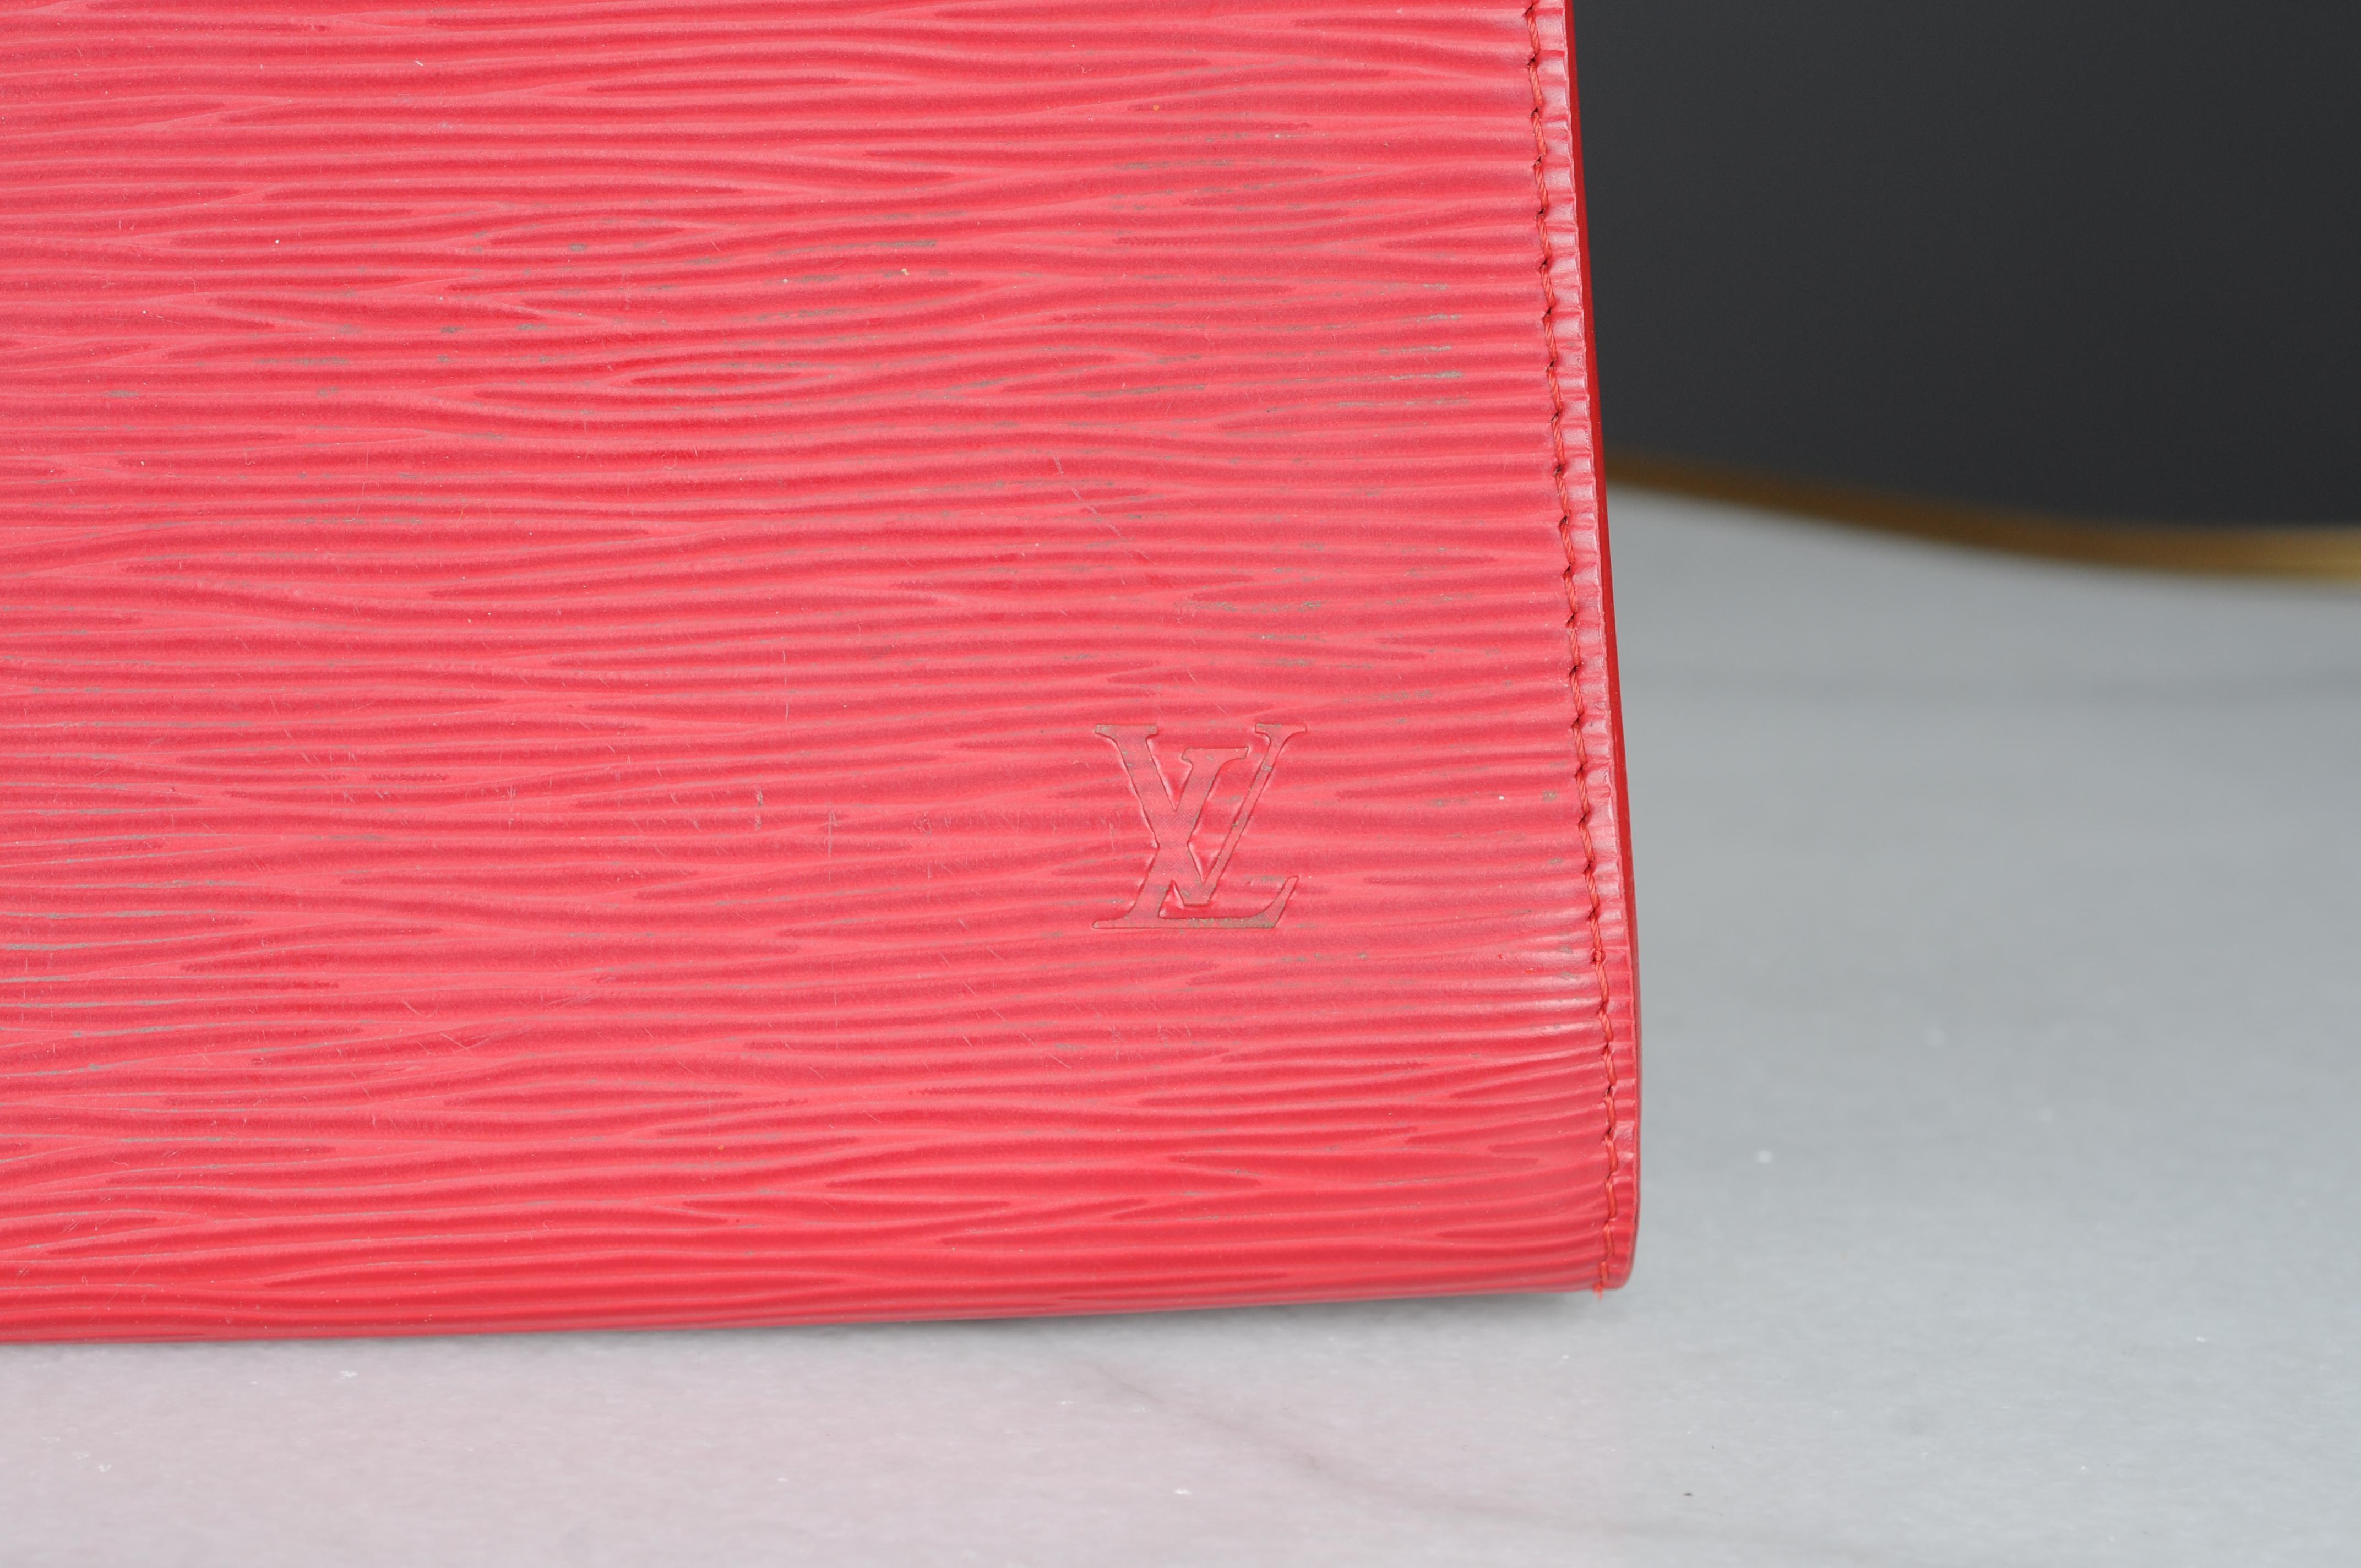 Die Handtasche Pochette Accessories wurde in dem für Louis Vuitton typischen Epi-Leder neu interpretiert. Das kultige Design zeichnet sich durch eine stilvolle, horizontale Silhouette aus, die subtil an den Vintage-Stil erinnert. Dank des